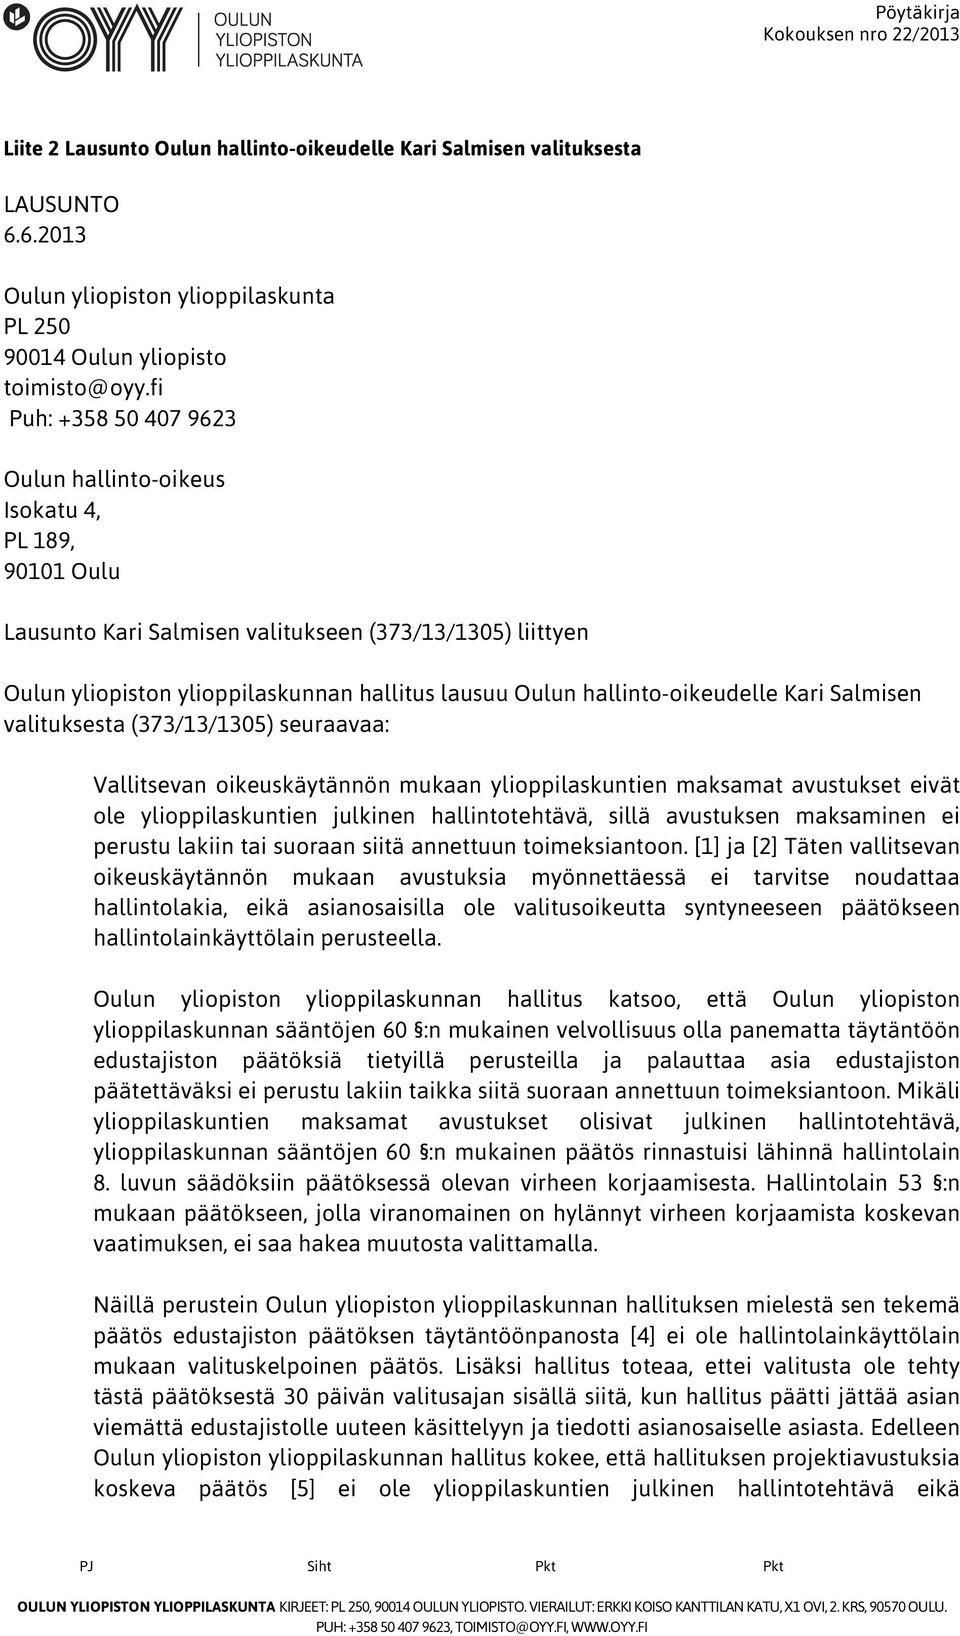 hallinto-oikeudelle Kari Salmisen valituksesta (373/13/1305) seuraavaa: Vallitsevan oikeuskäytännön mukaan ylioppilaskuntien maksamat avustukset eivät ole ylioppilaskuntien julkinen hallintotehtävä,